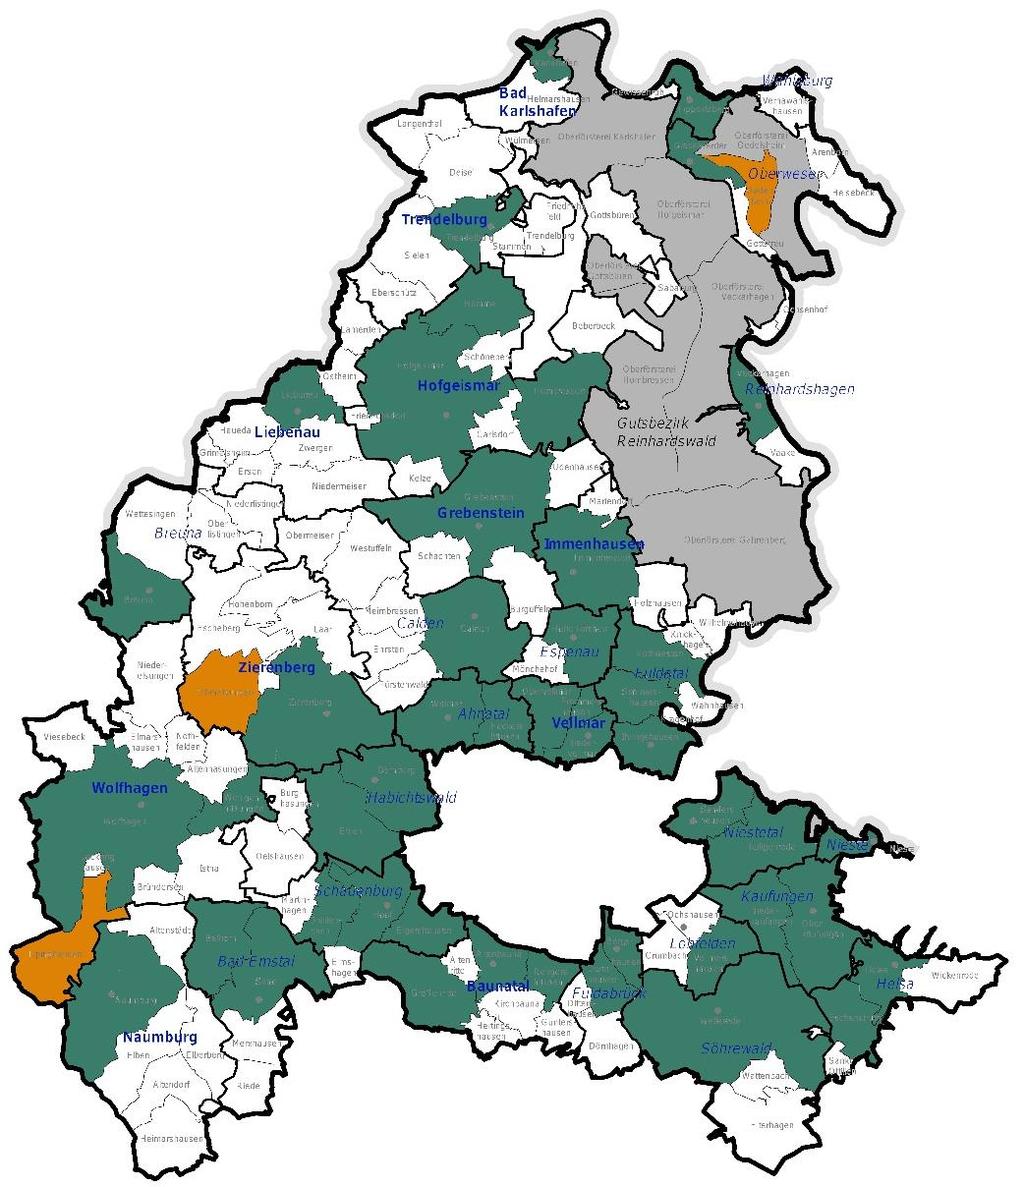 Grundschulstandorte 50 Grundschulen im Landkreis Kassel 2012 2017 schließen 3 Standorte (orange) Eingangsstufe Grundschule: mindestens 13 Schüler Prognose für Einschulungen 2017/18: 6 Schulen < 13